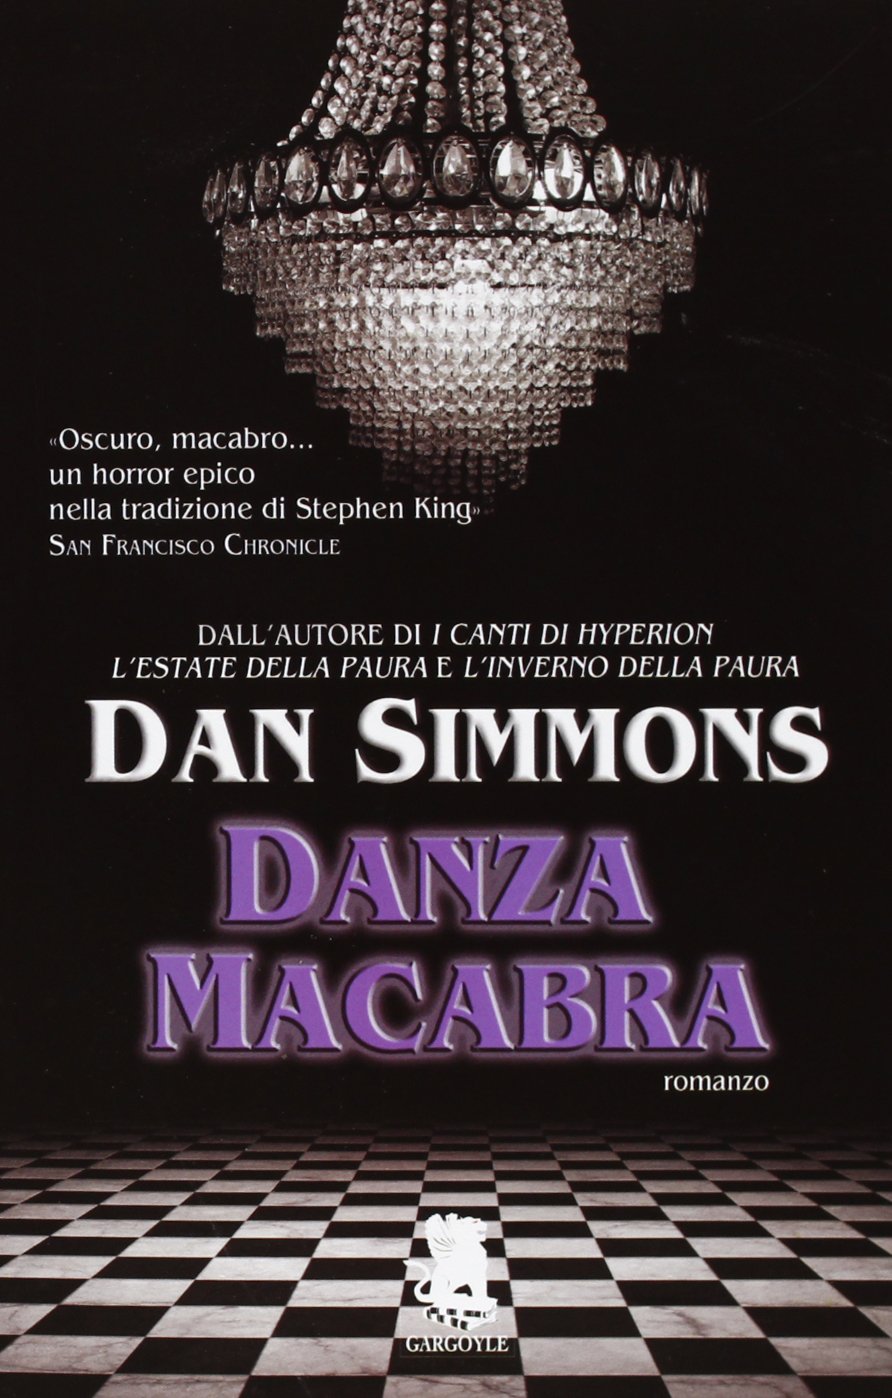 Danza Macabra di Dan Simmons romanzo horror sui vampiri di Dan Simmons